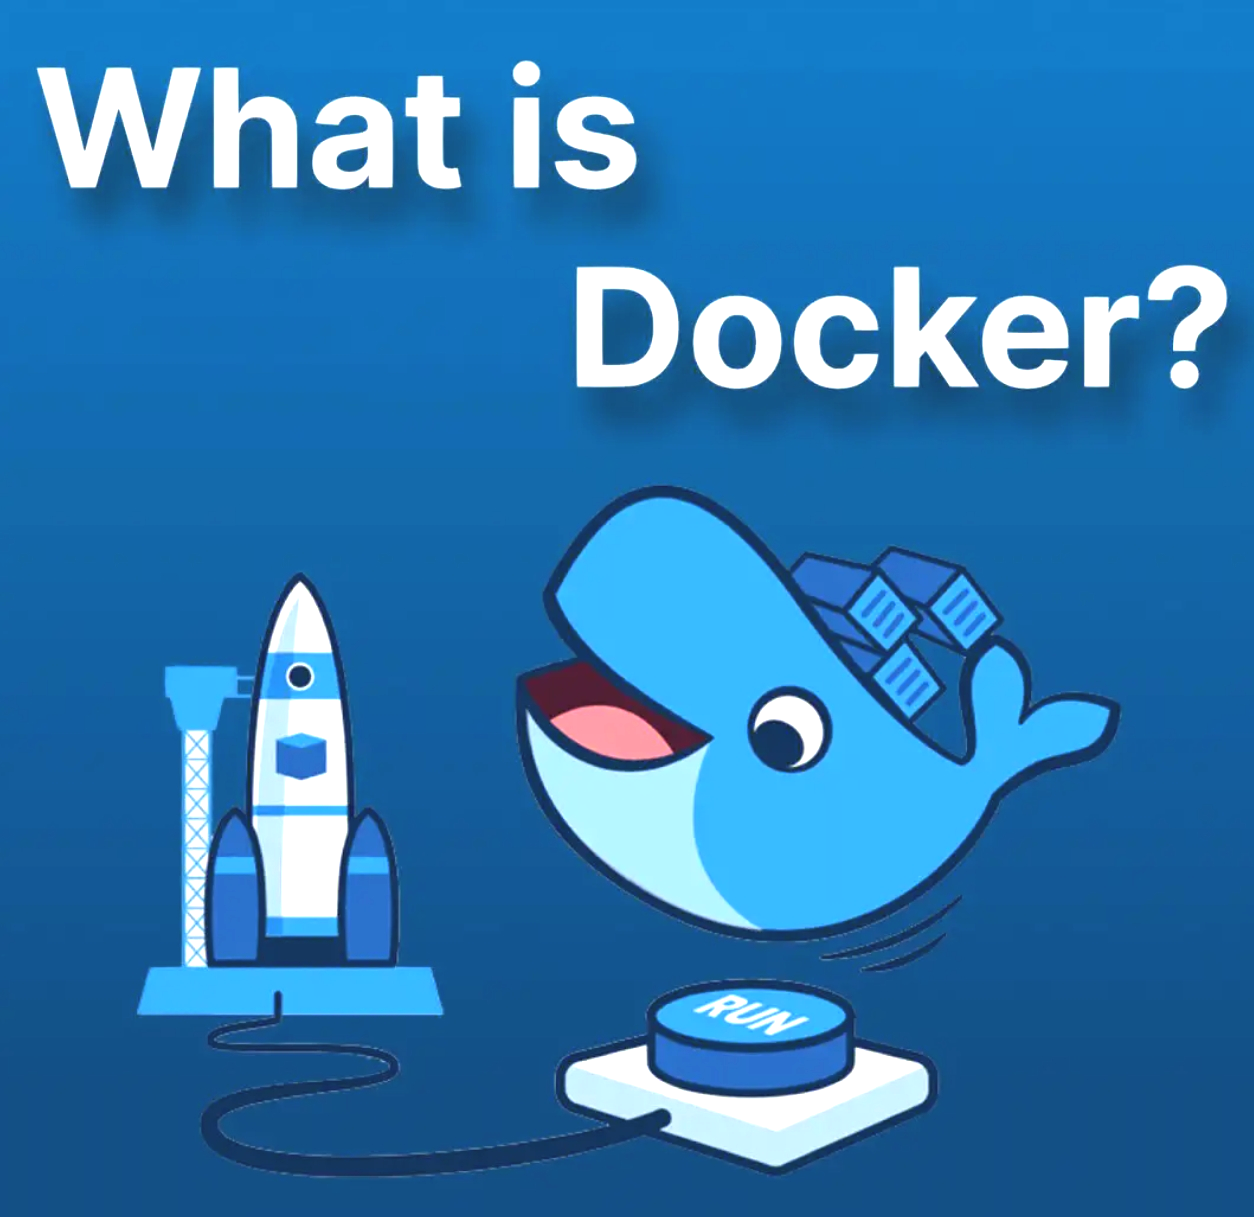 安装最新版 Docker 及配置 Proxy _Docker